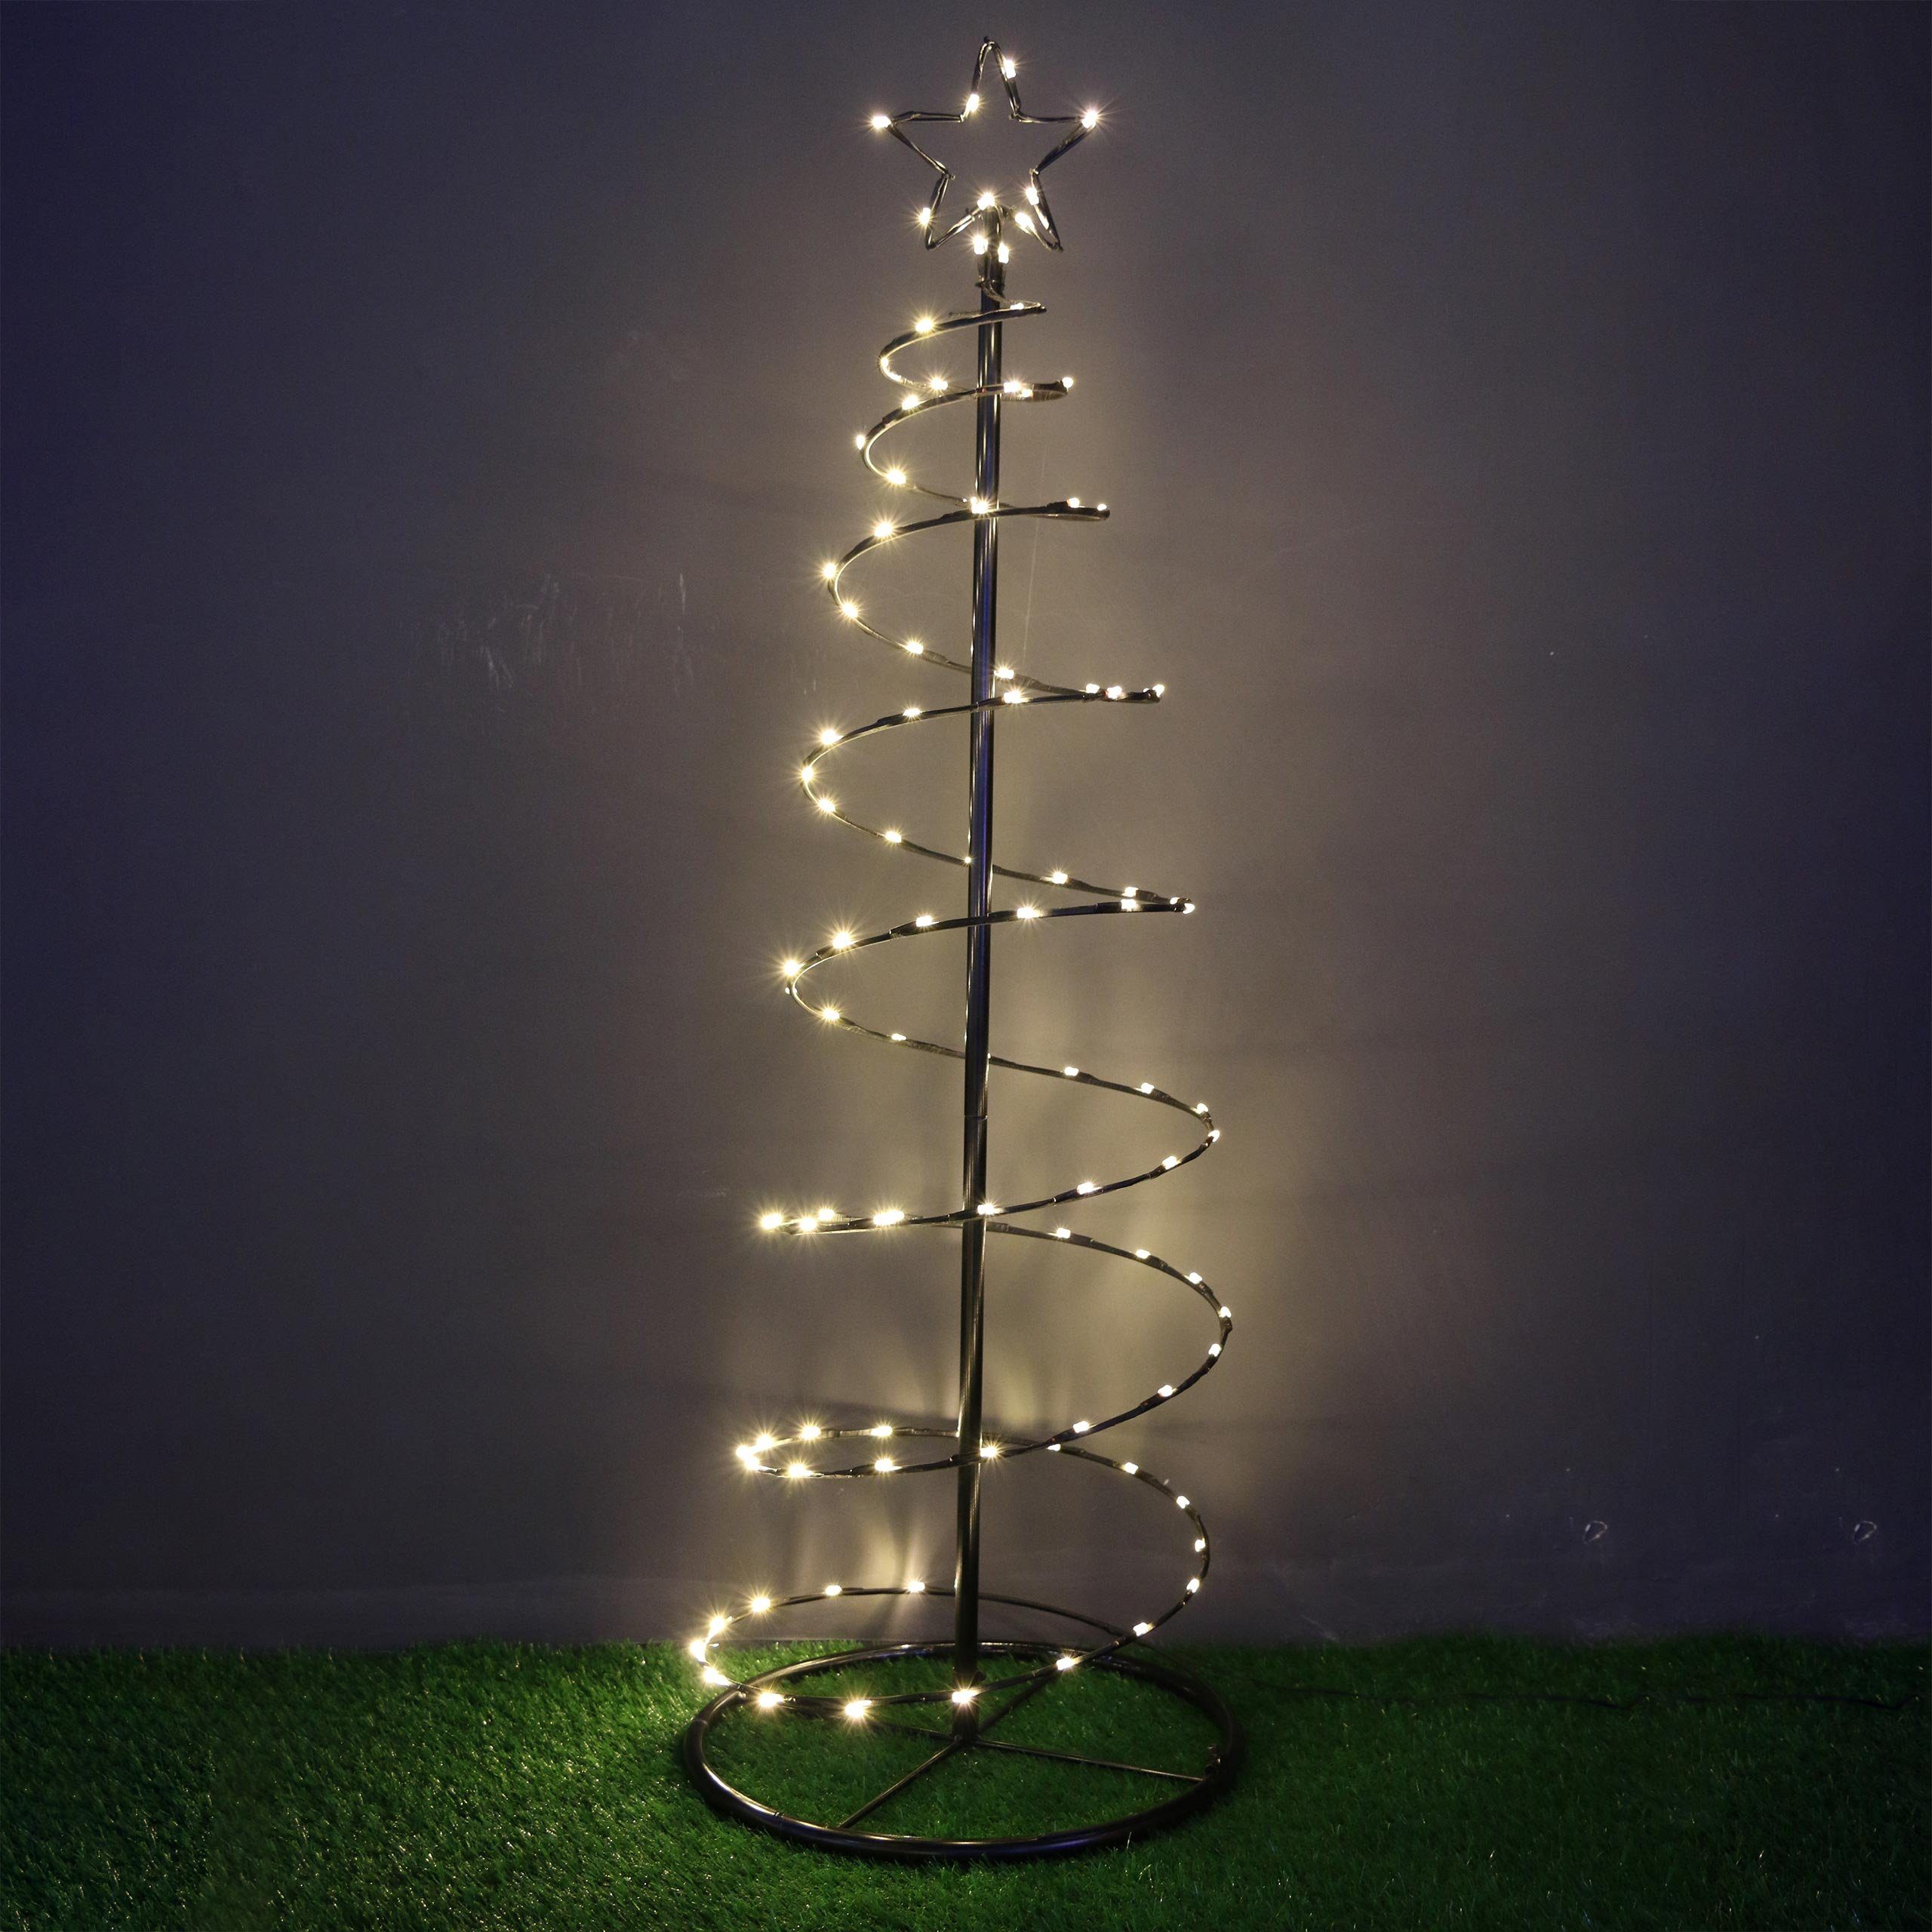 LED-Lichterbaum Schwarz Klein mit Glimmereffekt - Baum beleuchtet für  Außen, künstlicher Baum beleuchtet, Lichterbaum Glitzereffekt,  Weihnachtsdeko für den Garten, LED Lichterbaum Außen, LED-Baum, Lichtbaum